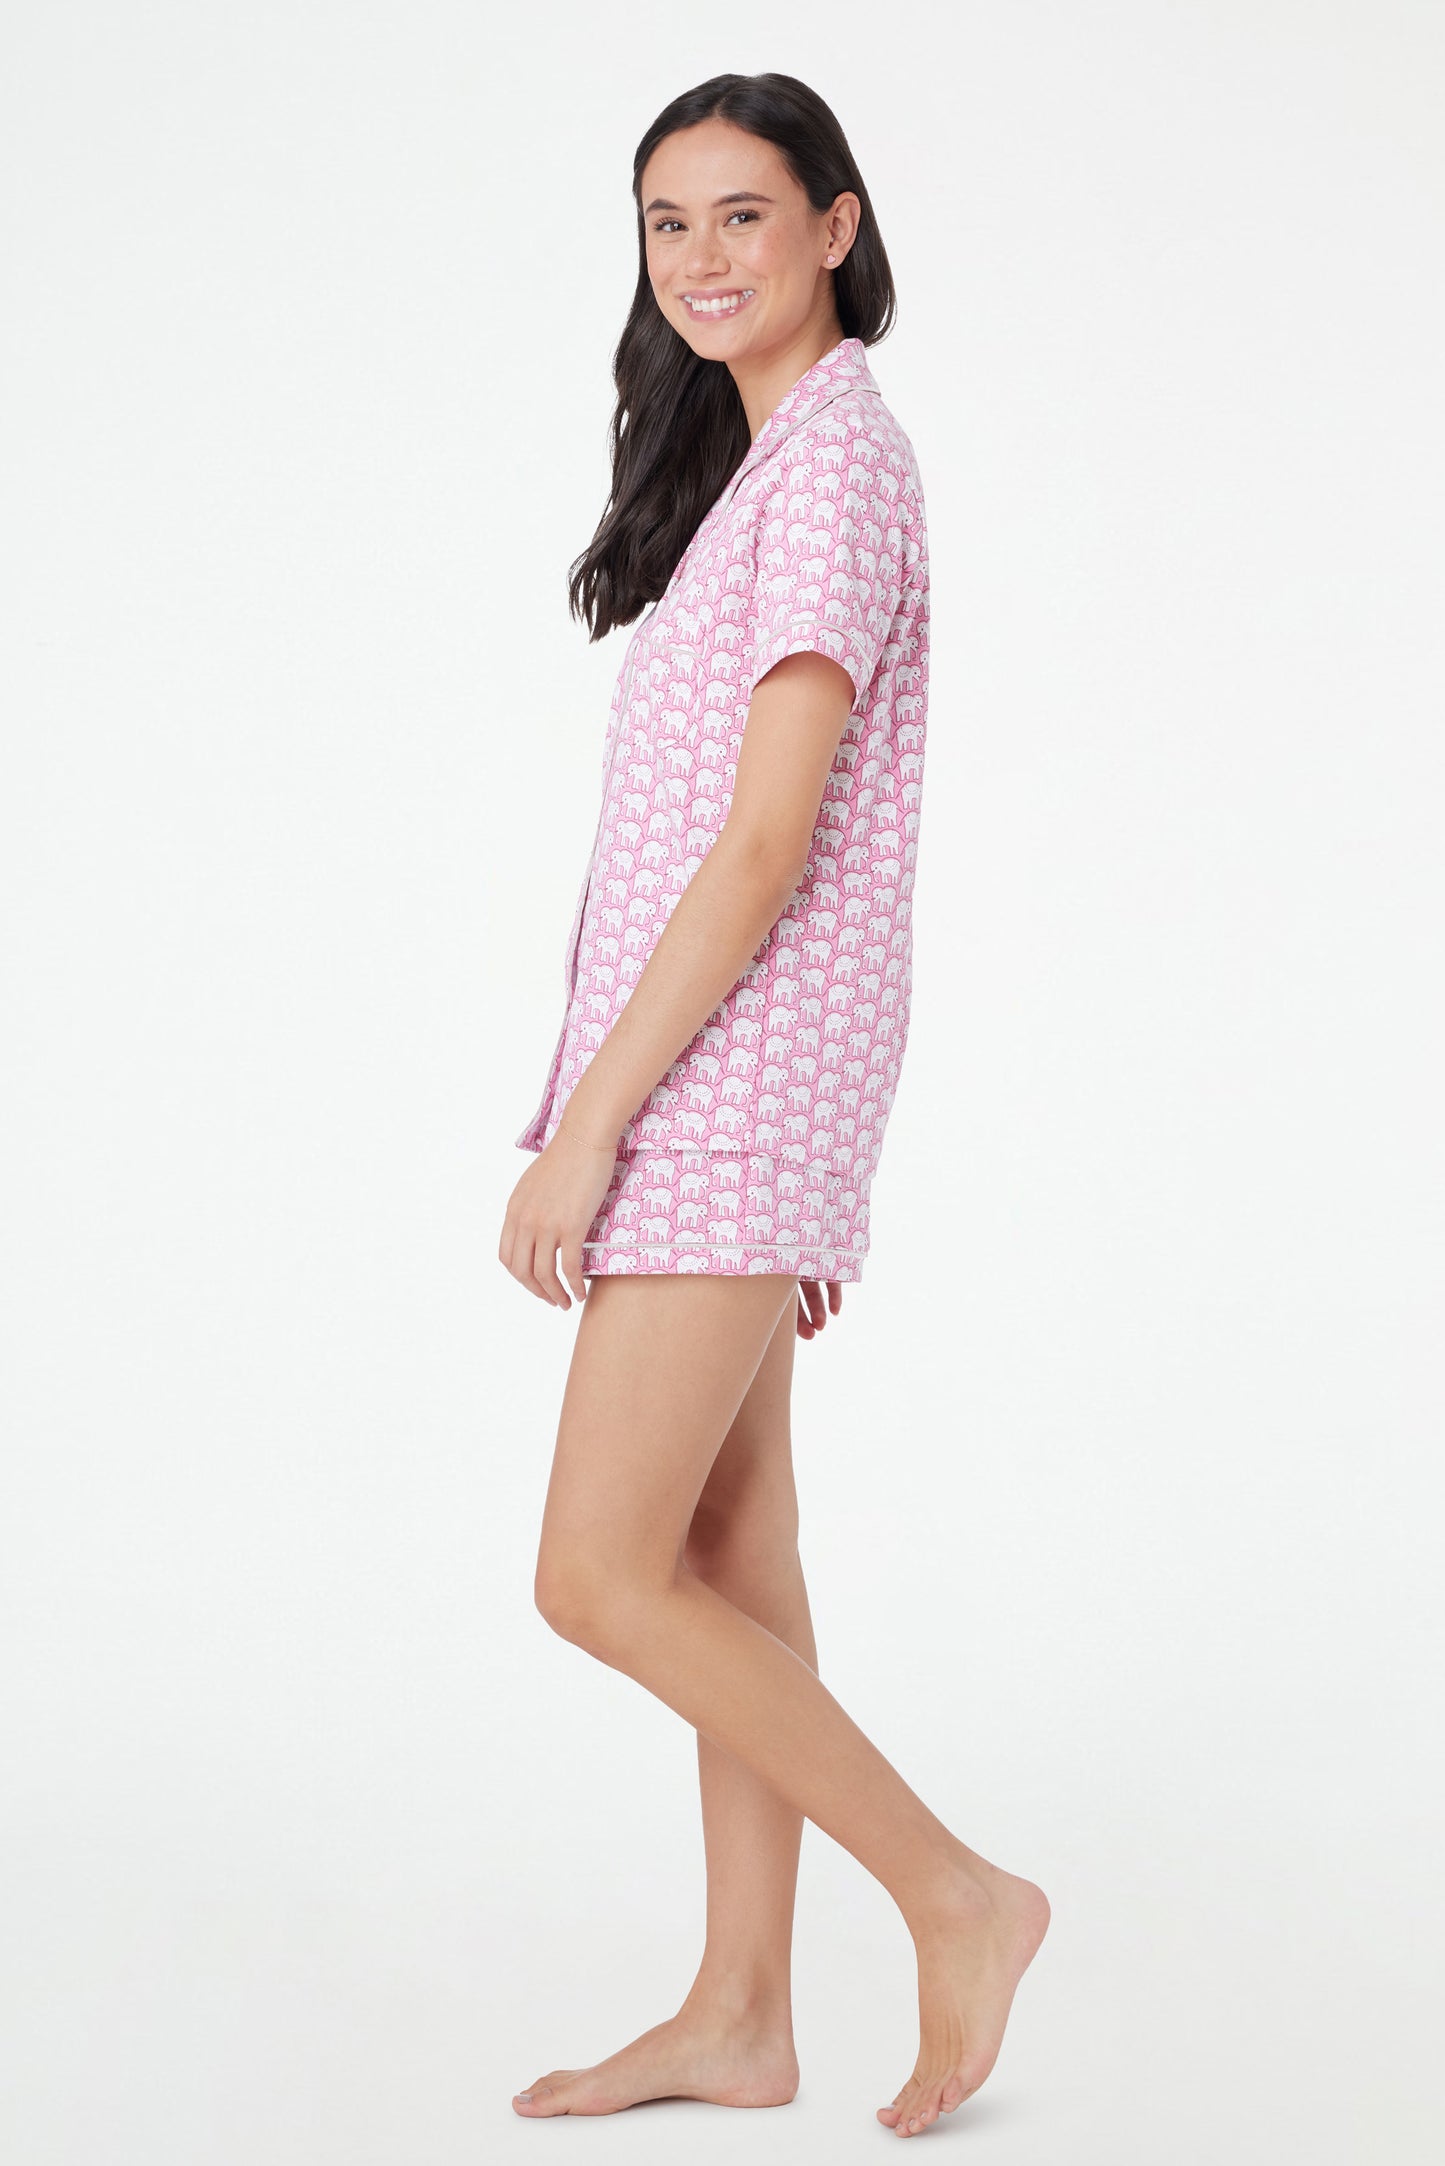 Roller Rabbit Pink & White Hathi Polo Pajamas